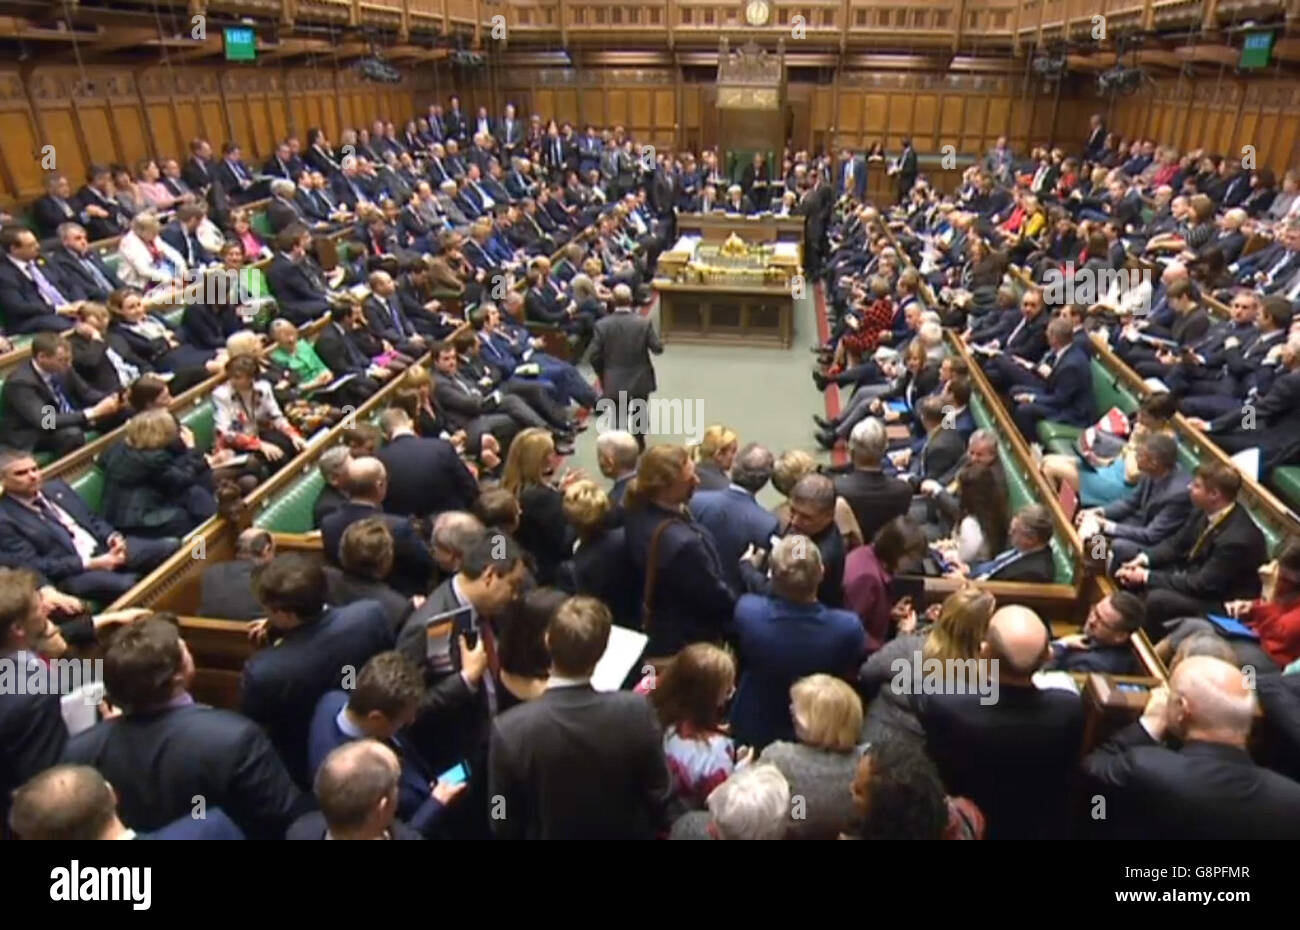 Abgeordnete kommen zusammen, um das Ergebnis einer Abstimmung im Londoner Unterhaus zu hören, da die Regierung eine demütigende Niederlage des Unterhauses wegen der Pläne zur Verlängerung der Handelszeiten am Sonntag erlitten hat, nachdem Tory Rebels sich mit Labour und der SNP zusammengeschlossen hatten. Stockfoto